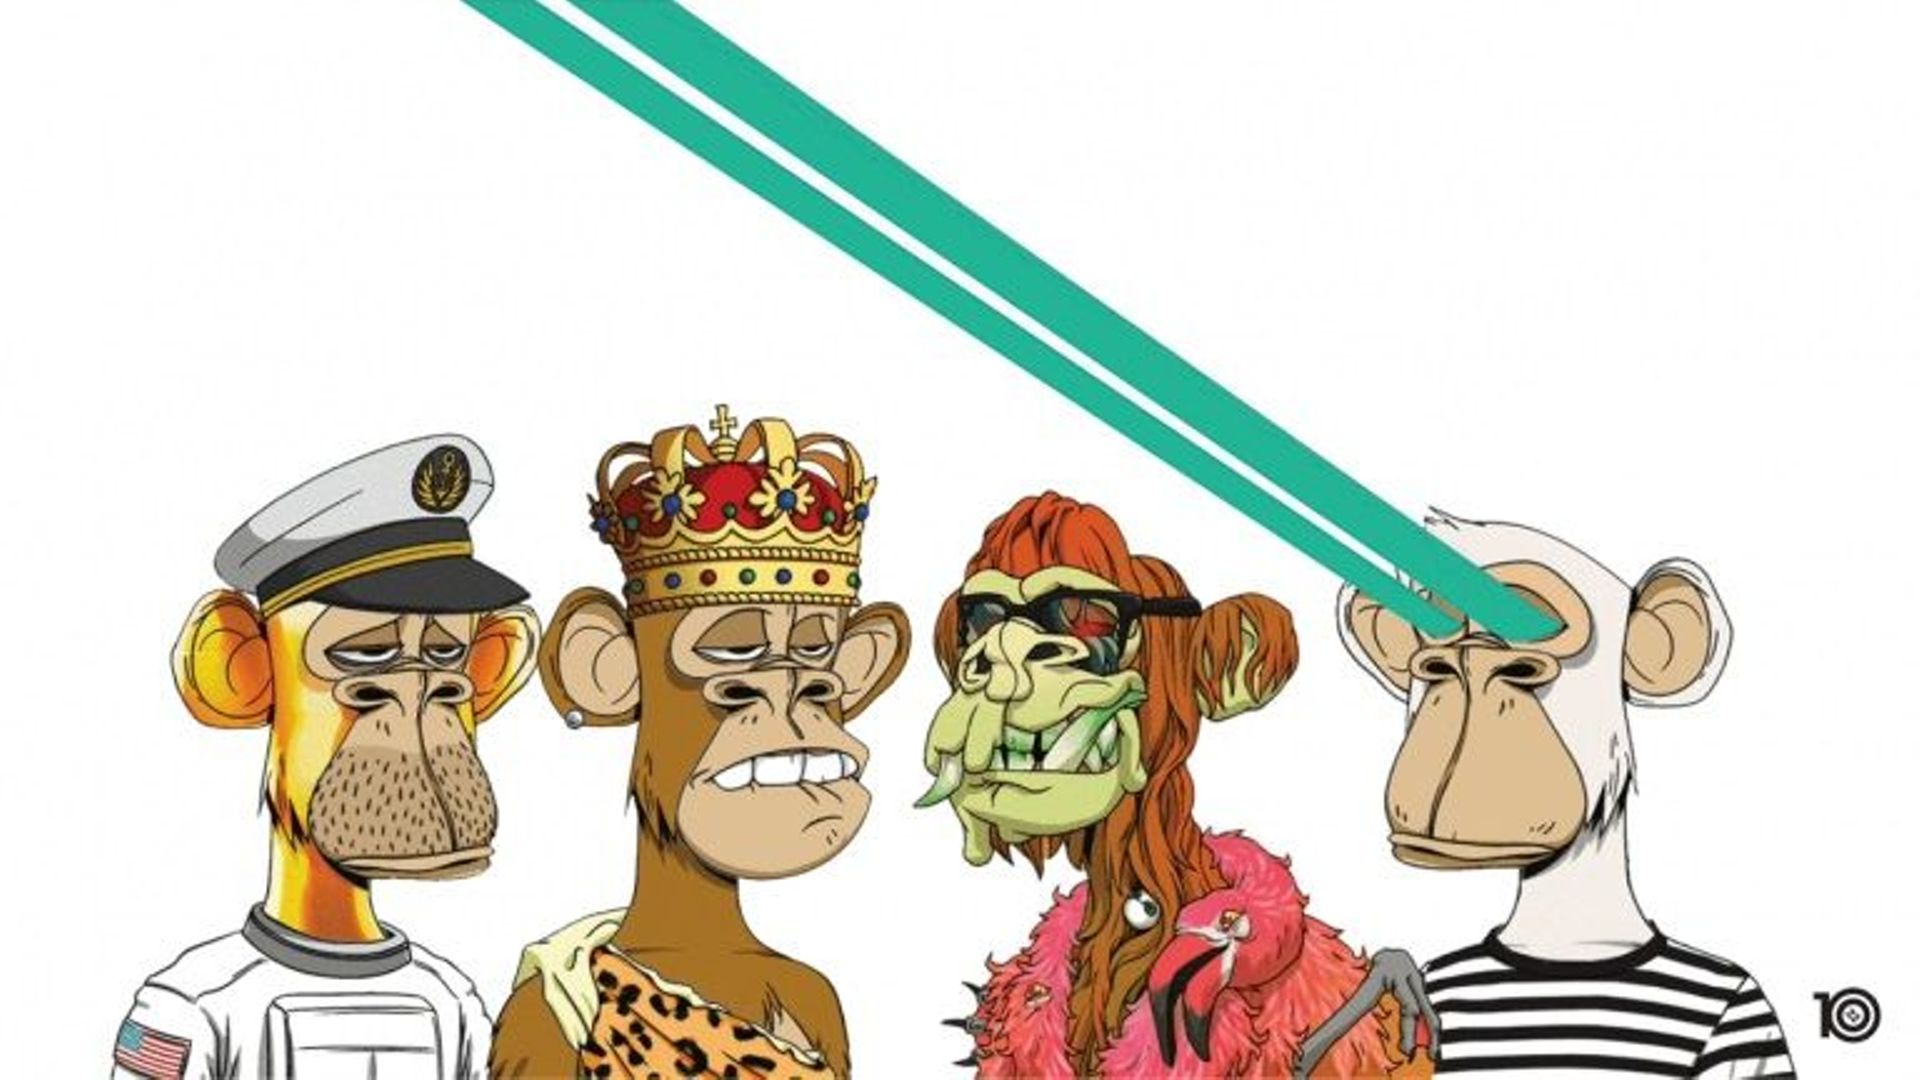 Kingship, un nouveau groupe de Universal Music, est composé de quatre singes NFT‧ 

